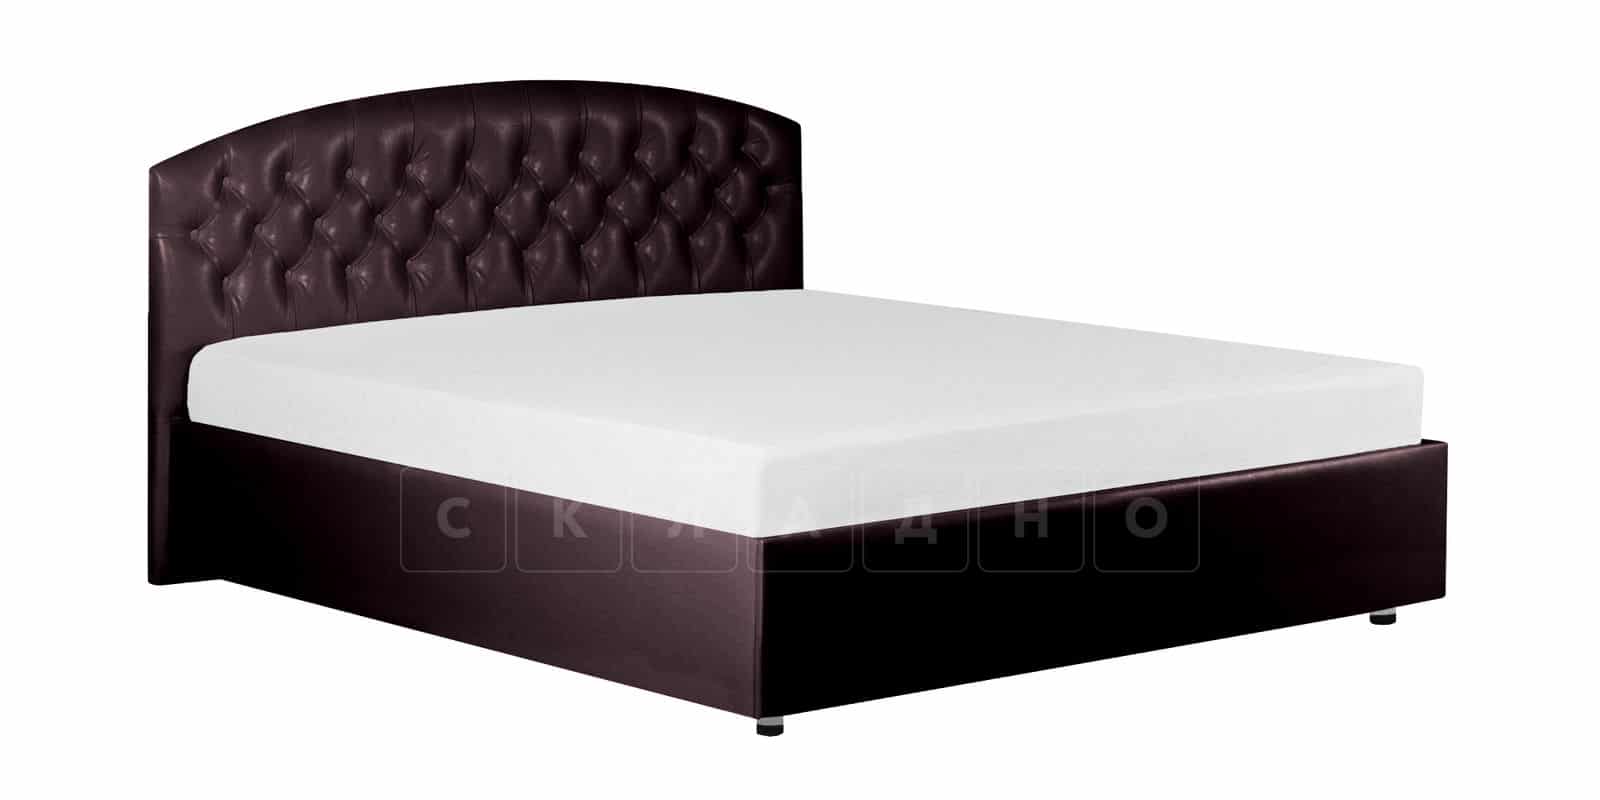 Мягкая кровать Малибу 160 см экокожа шоколадного цвета вариант 1 фото 7 | интернет-магазин Складно